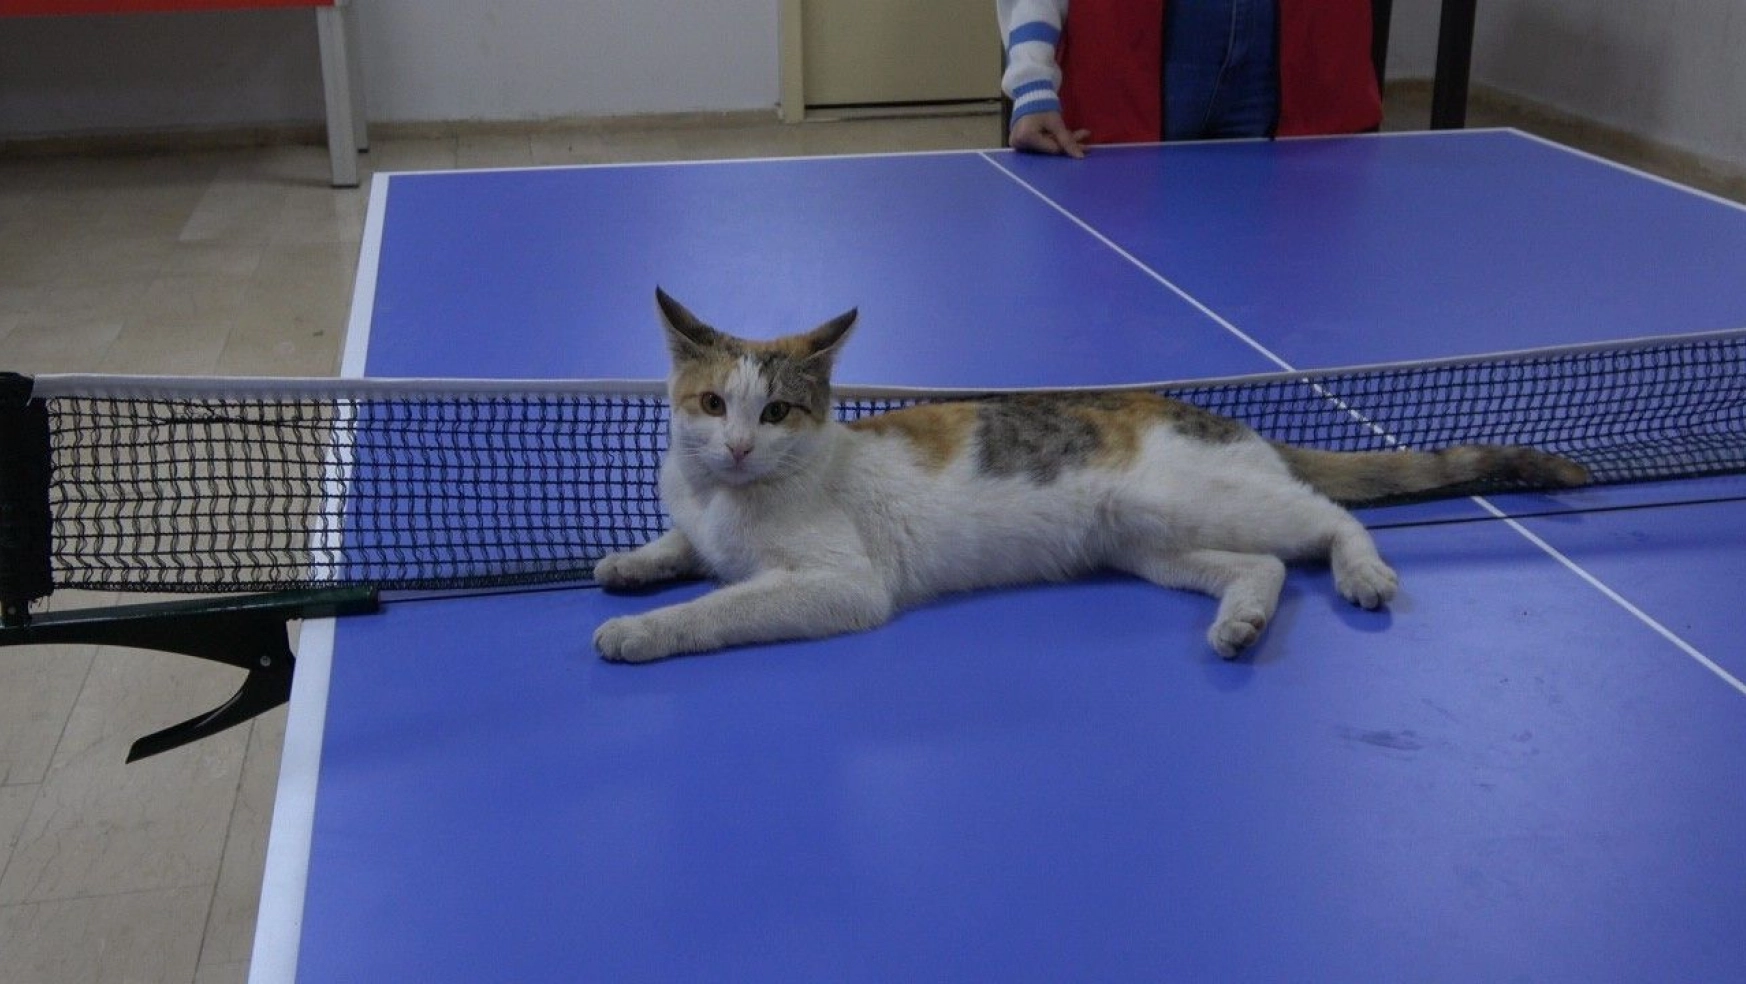 Masa tenisi oynayan kedi hayran bıraktı